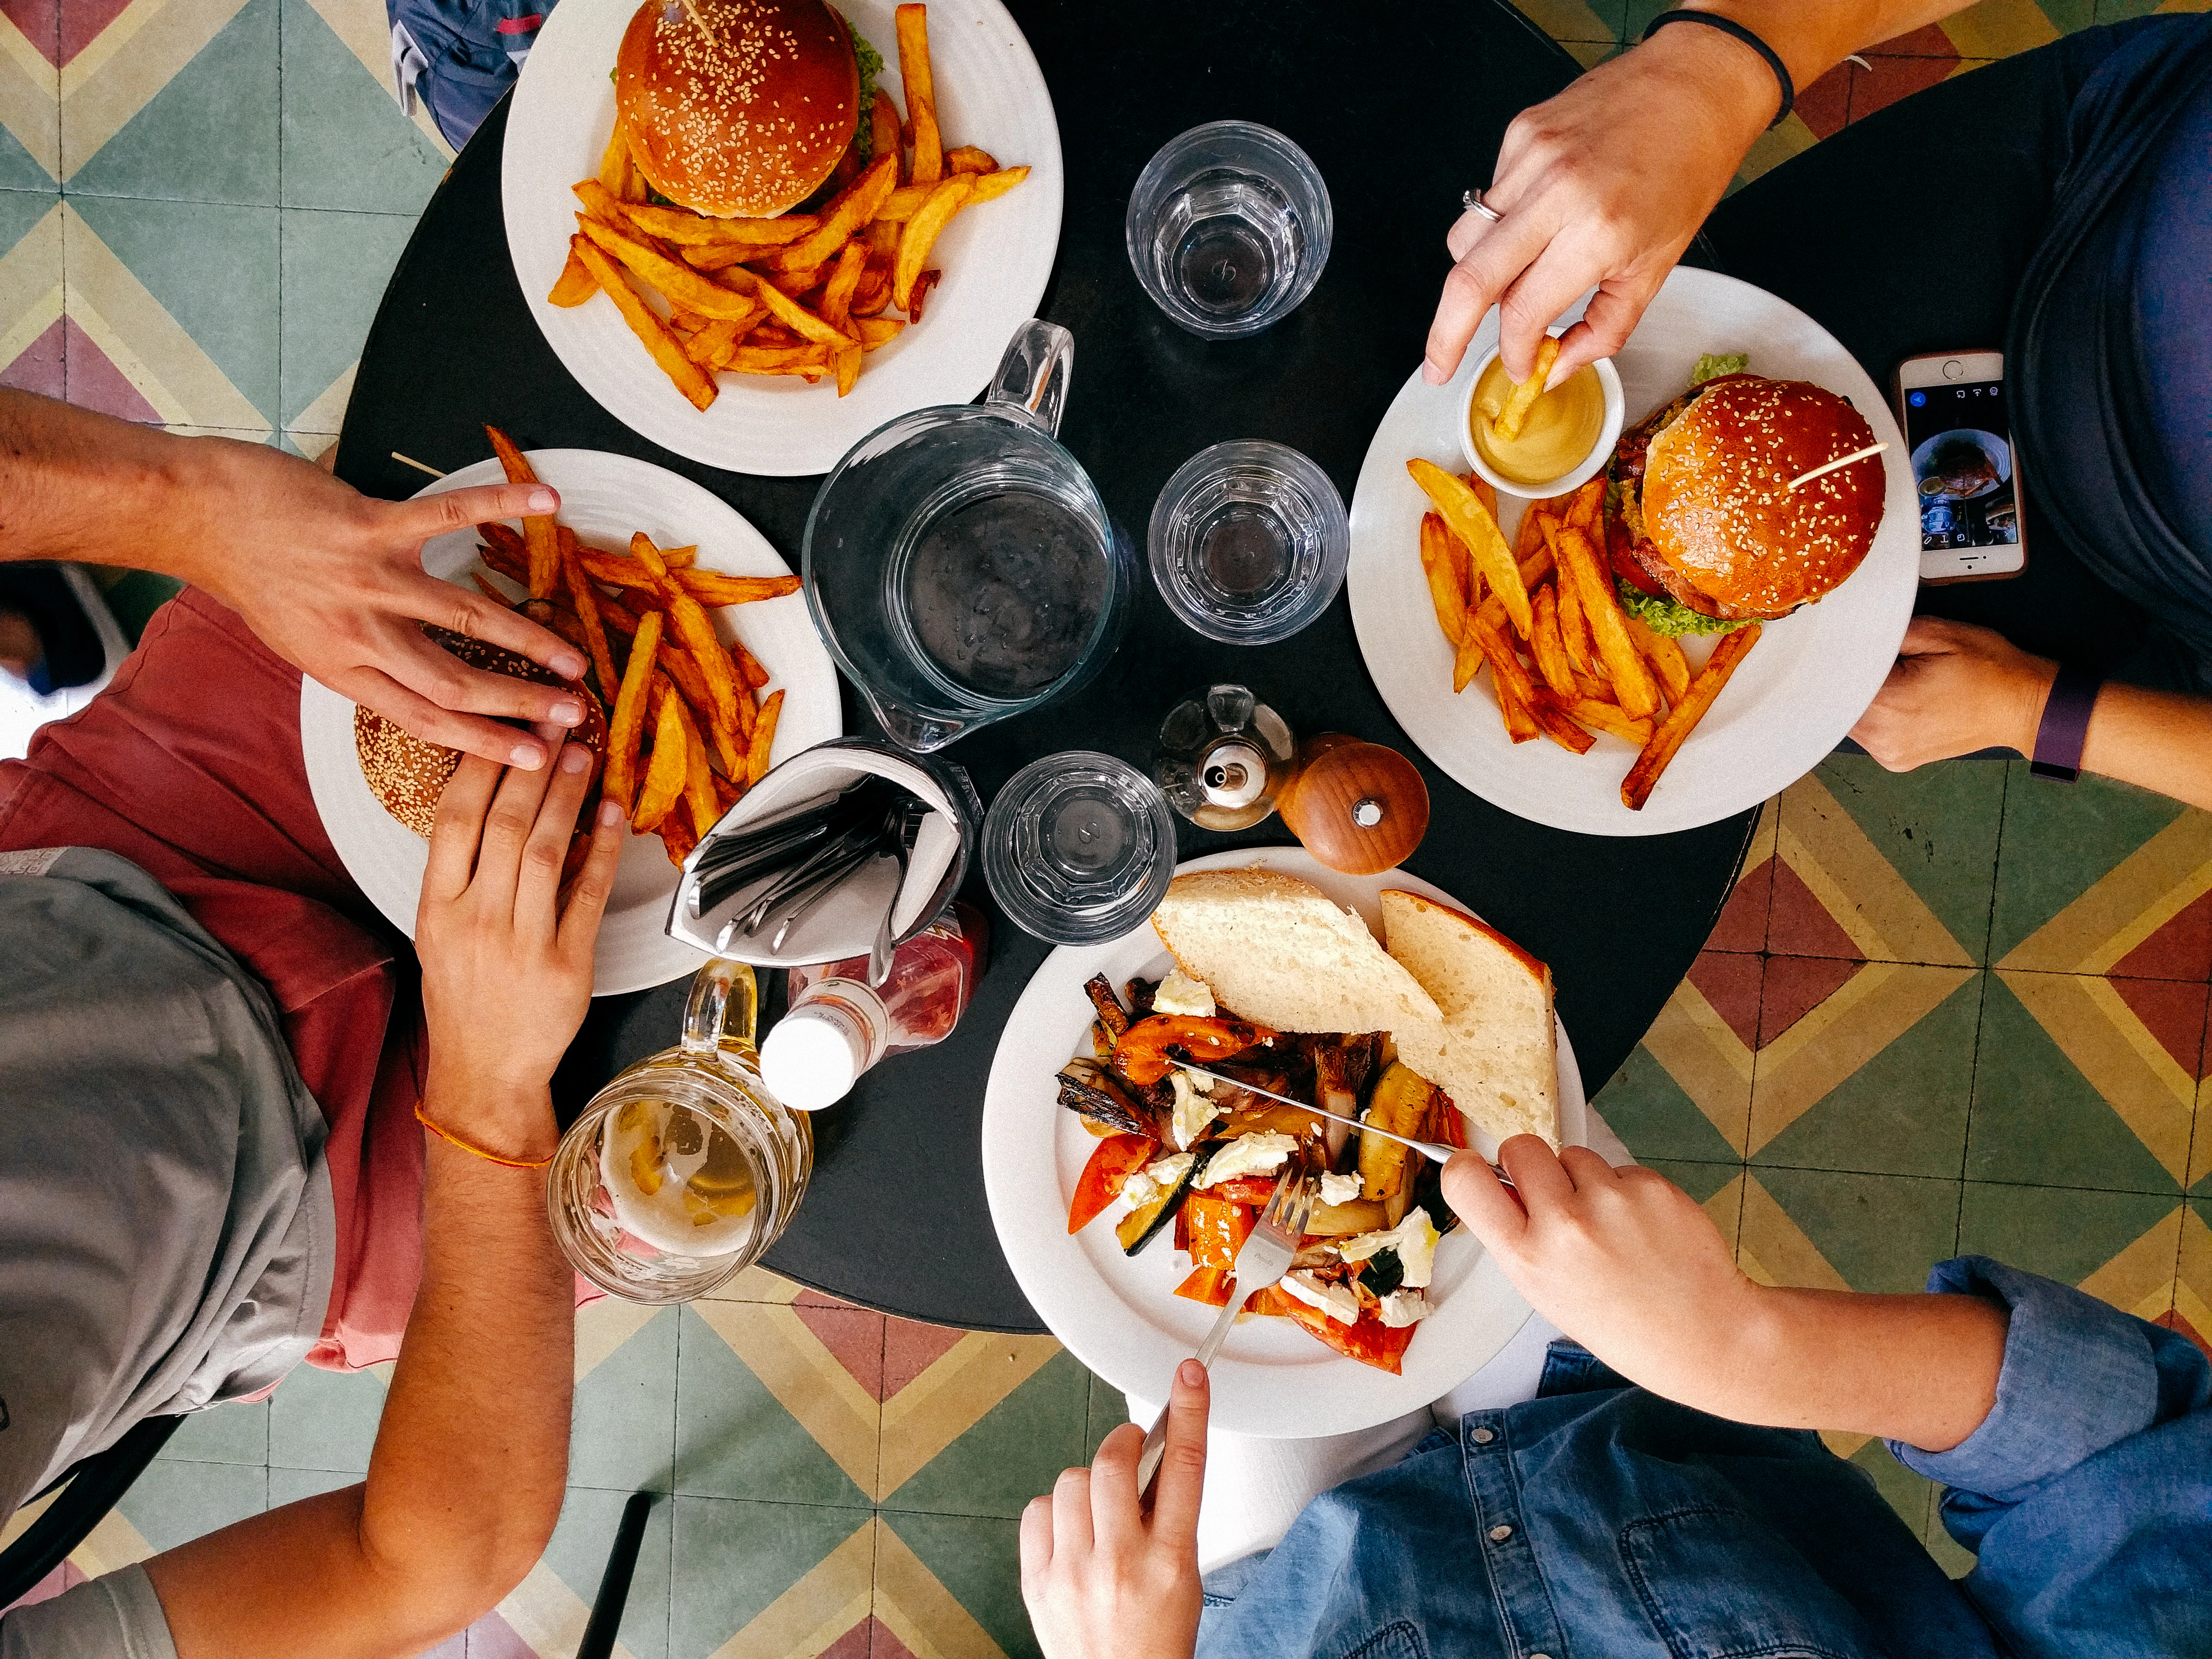 Image décorative représentant 4 personnes en train de manger des burgers autour d'une table